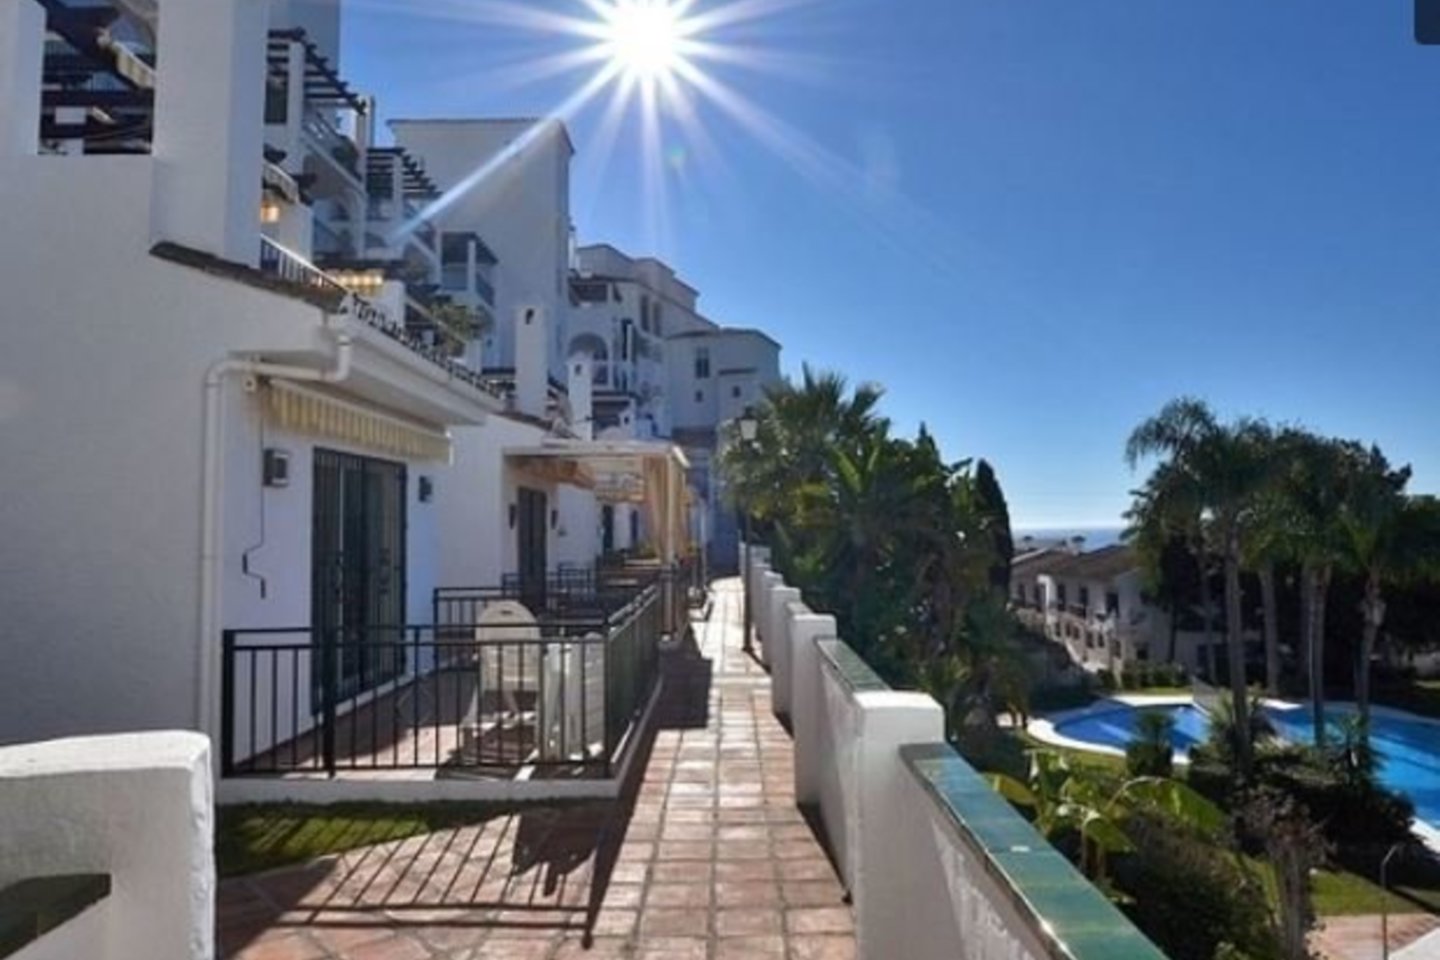 Malagoje 109 kv. m apartamentai su dviem vonios kambariais ir dviem terasomis, kurių viena – 20 kv. metrų, kainuoja 169 tūkst. eurų.